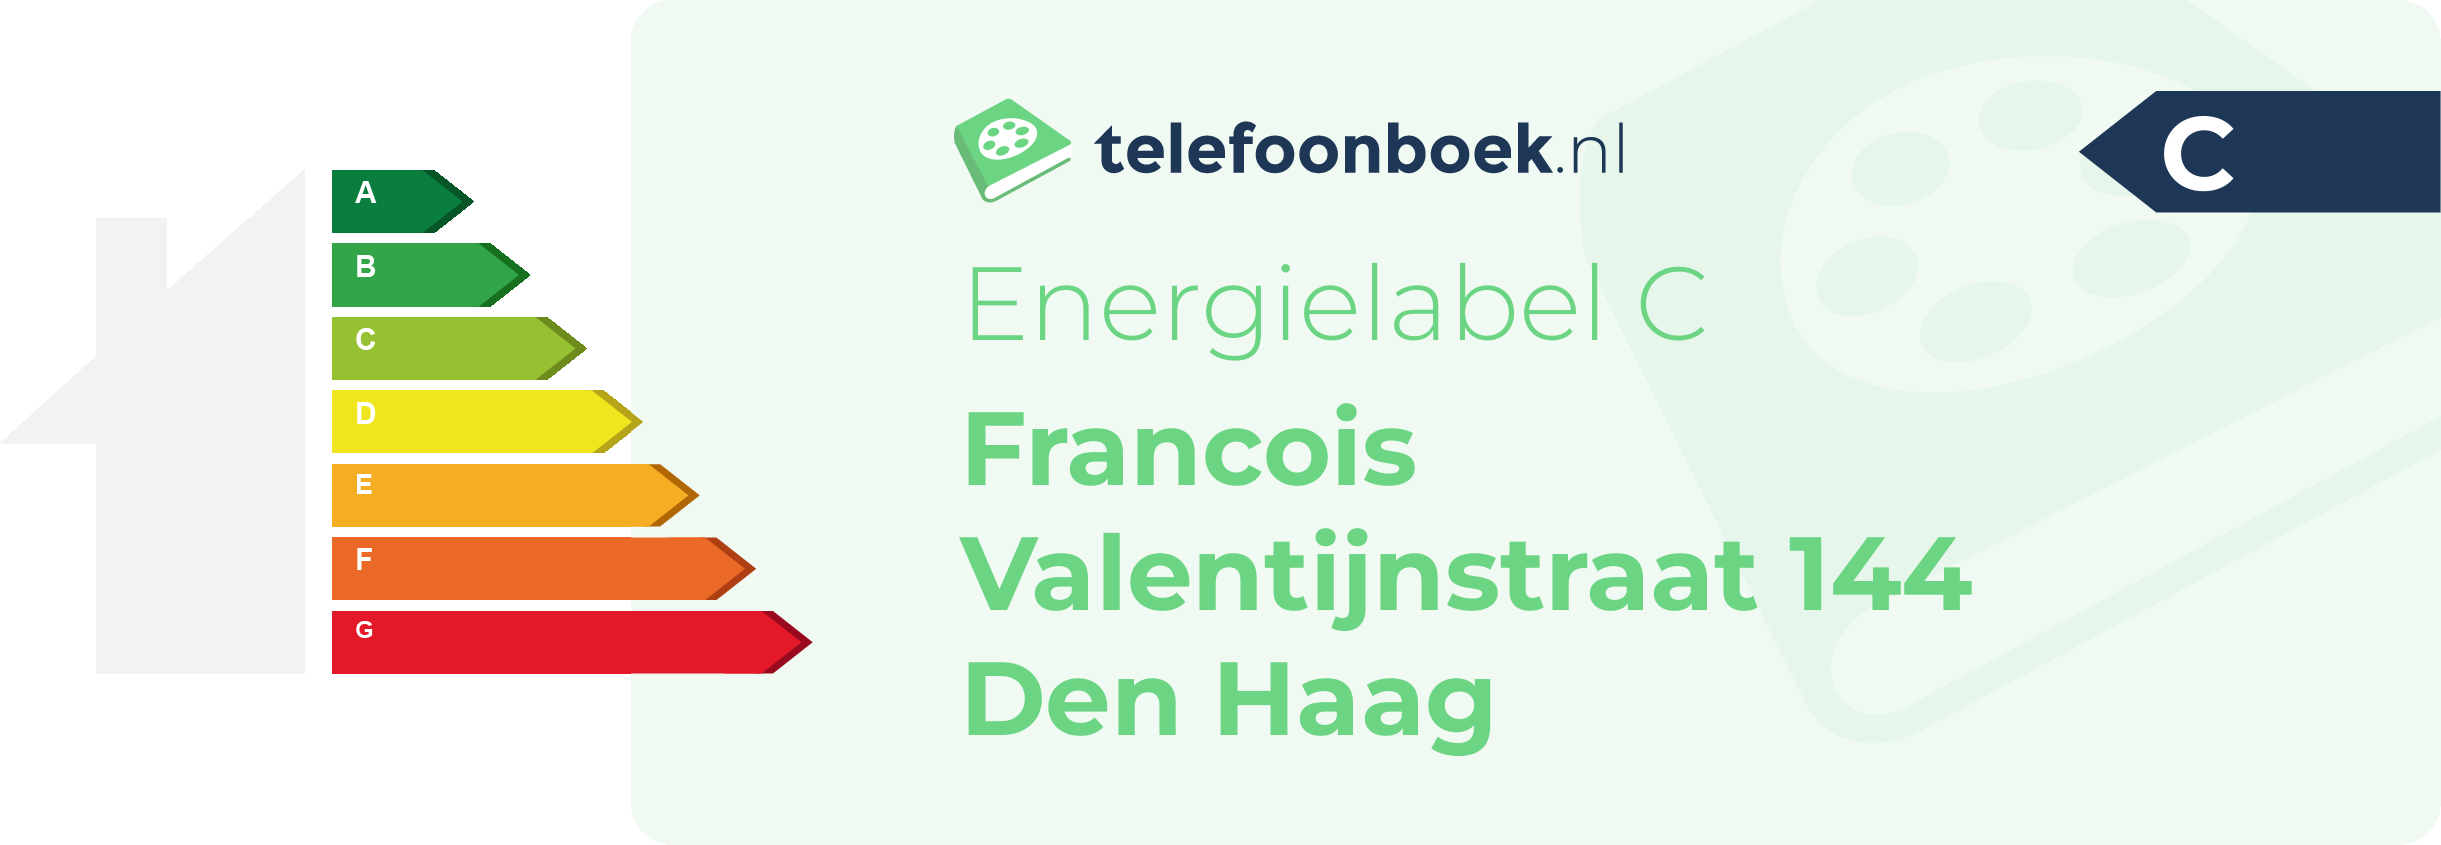 Energielabel Francois Valentijnstraat 144 Den Haag